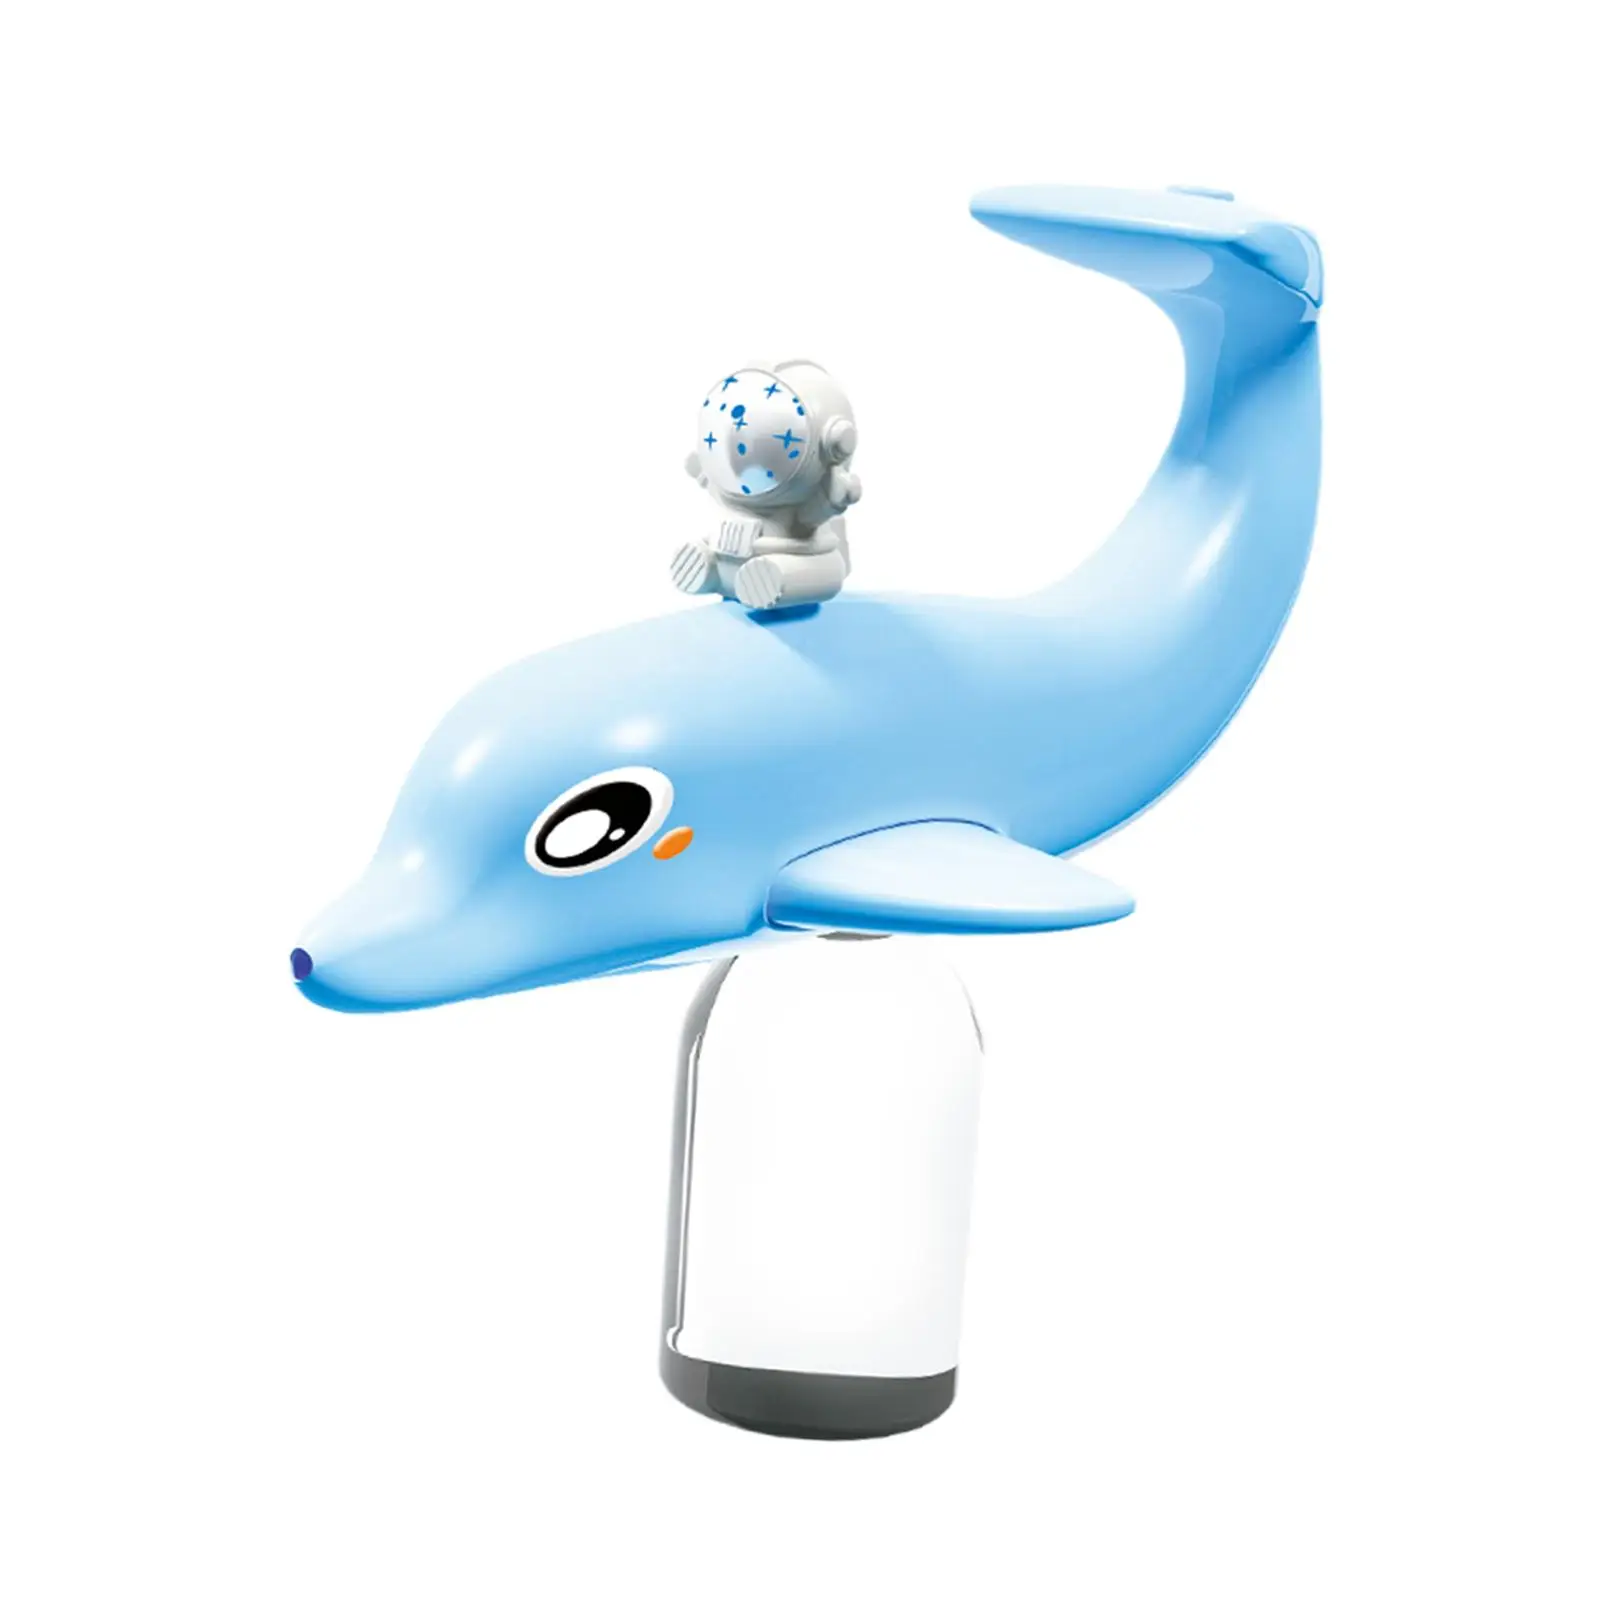 

Игрушка водный разбрызгиватель с дельфином, емкость для воды 300 мл, водные игрушки для боевых искусств, бластеры для воды, летняя игрушка для ванны, бассейна, сада